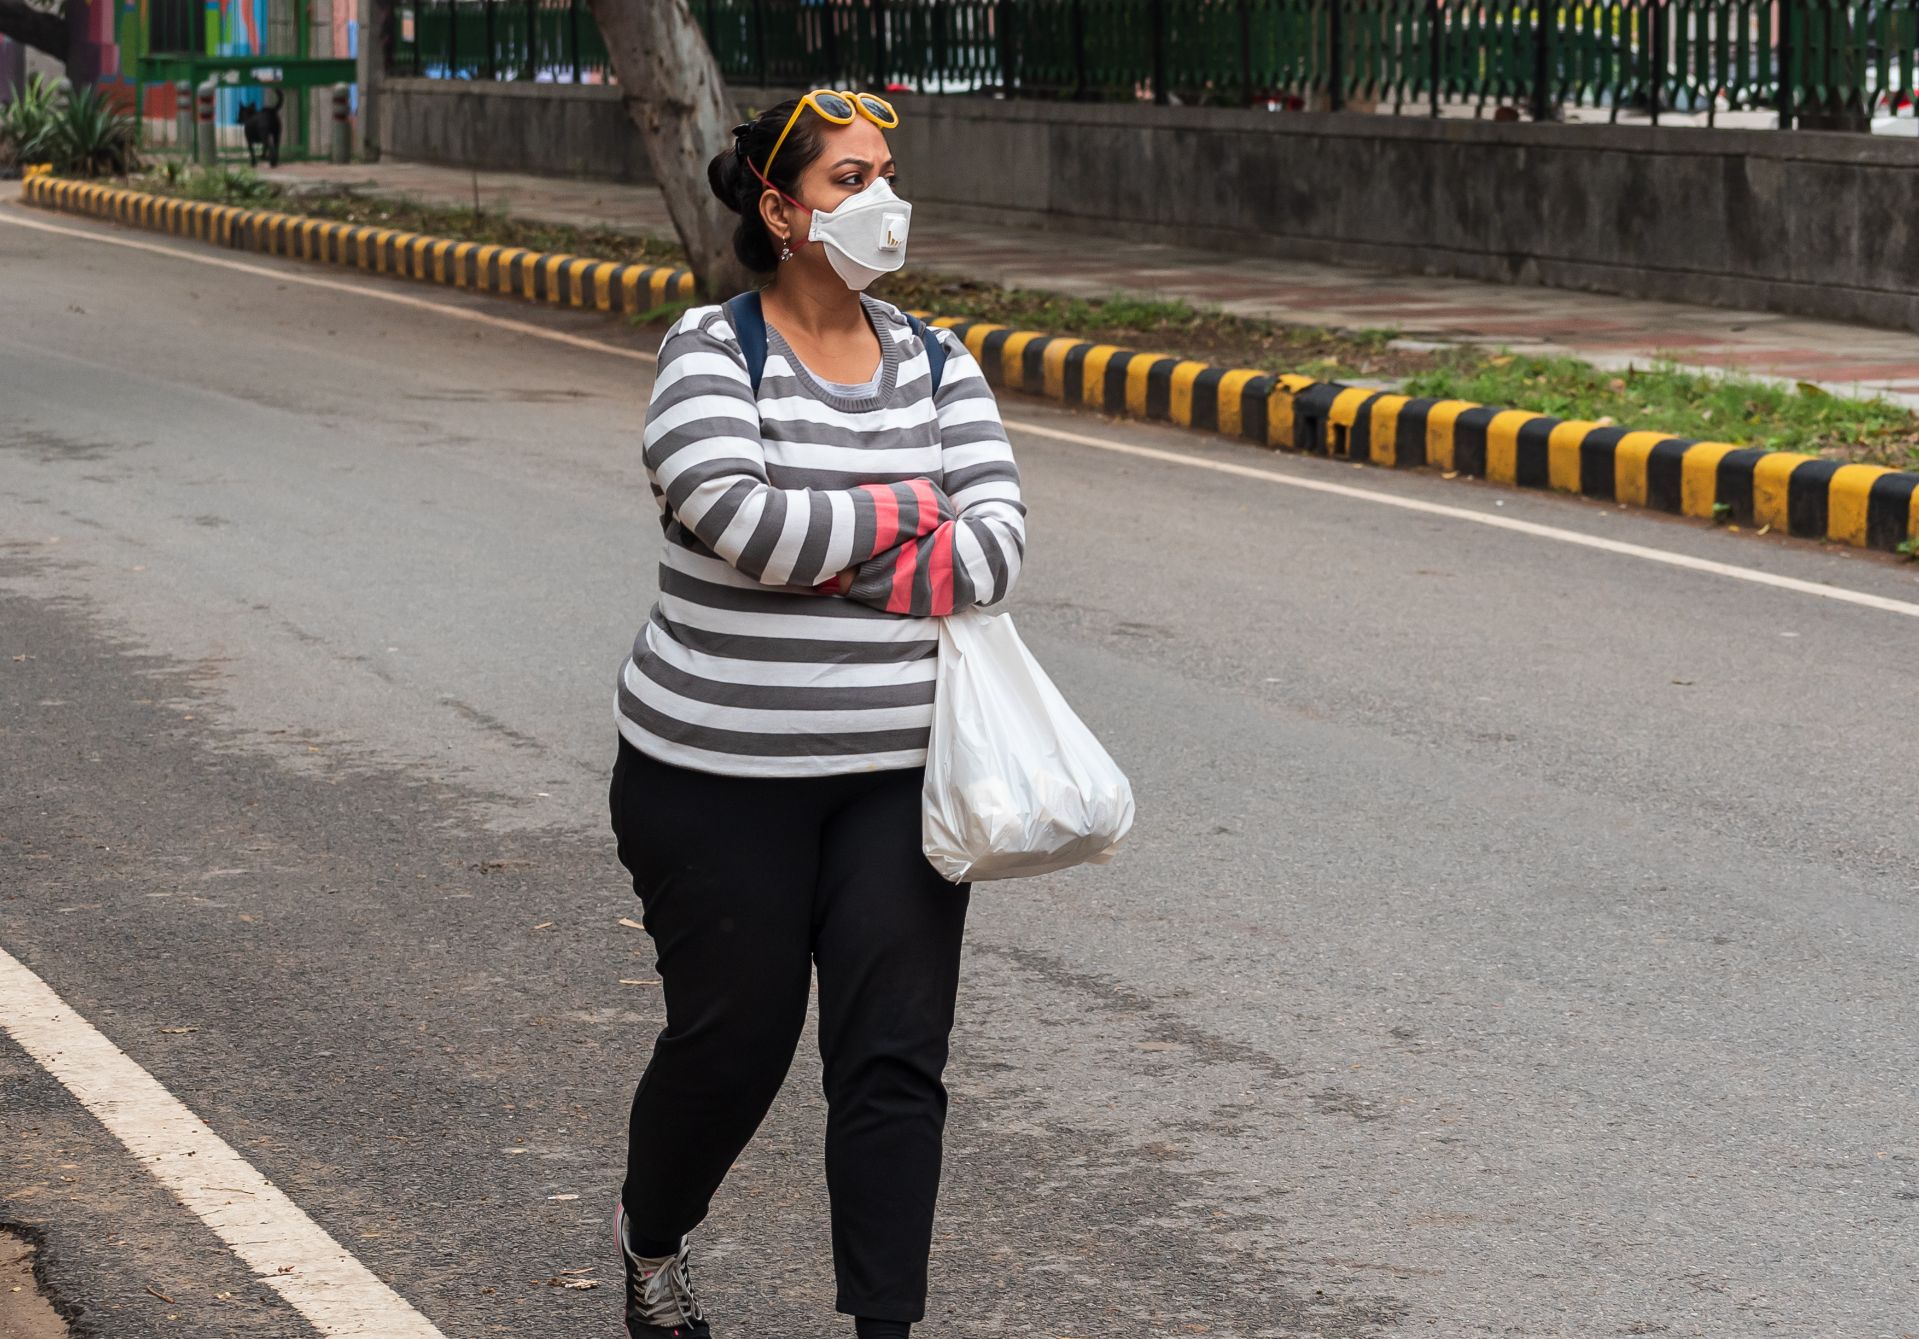 Crește prevalenţa obezităţii în India